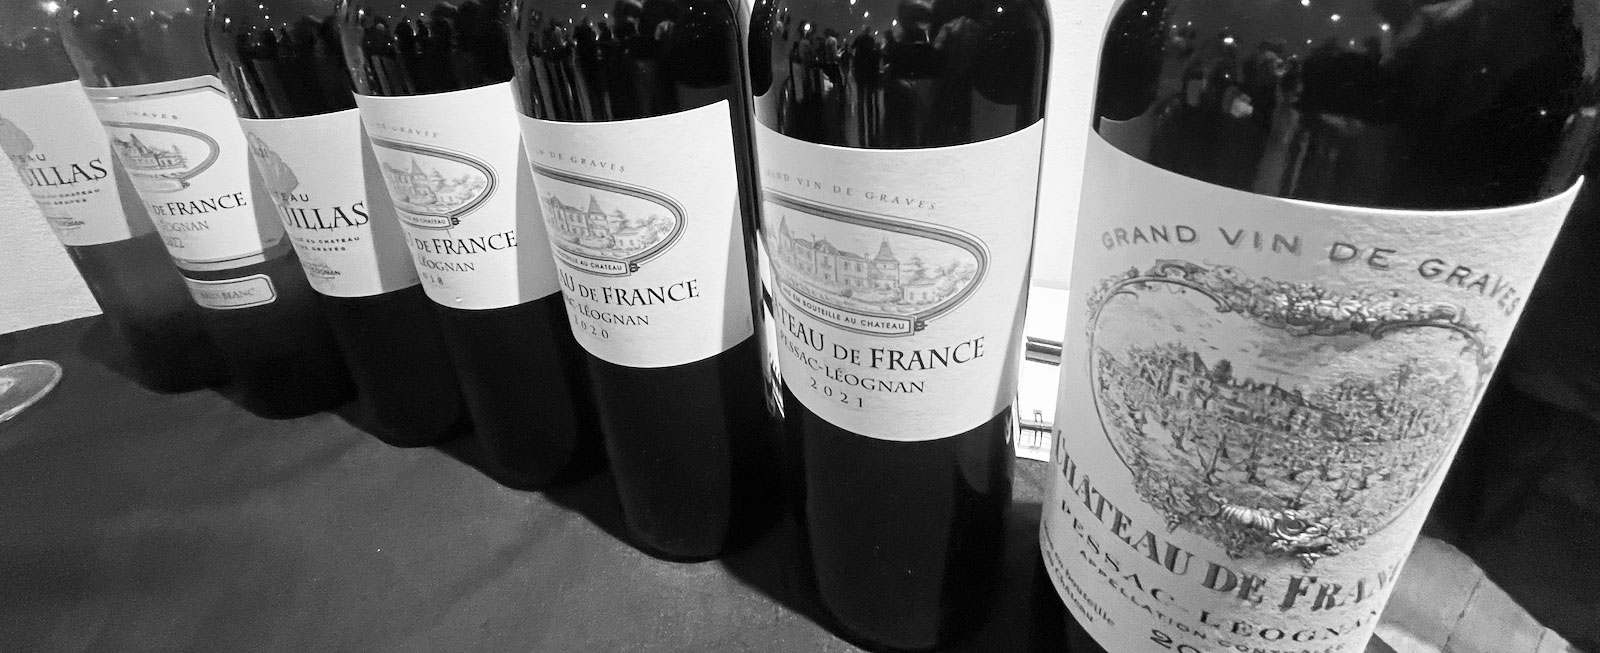 Tasting Château de France wines chez Dame Augustine, Paris